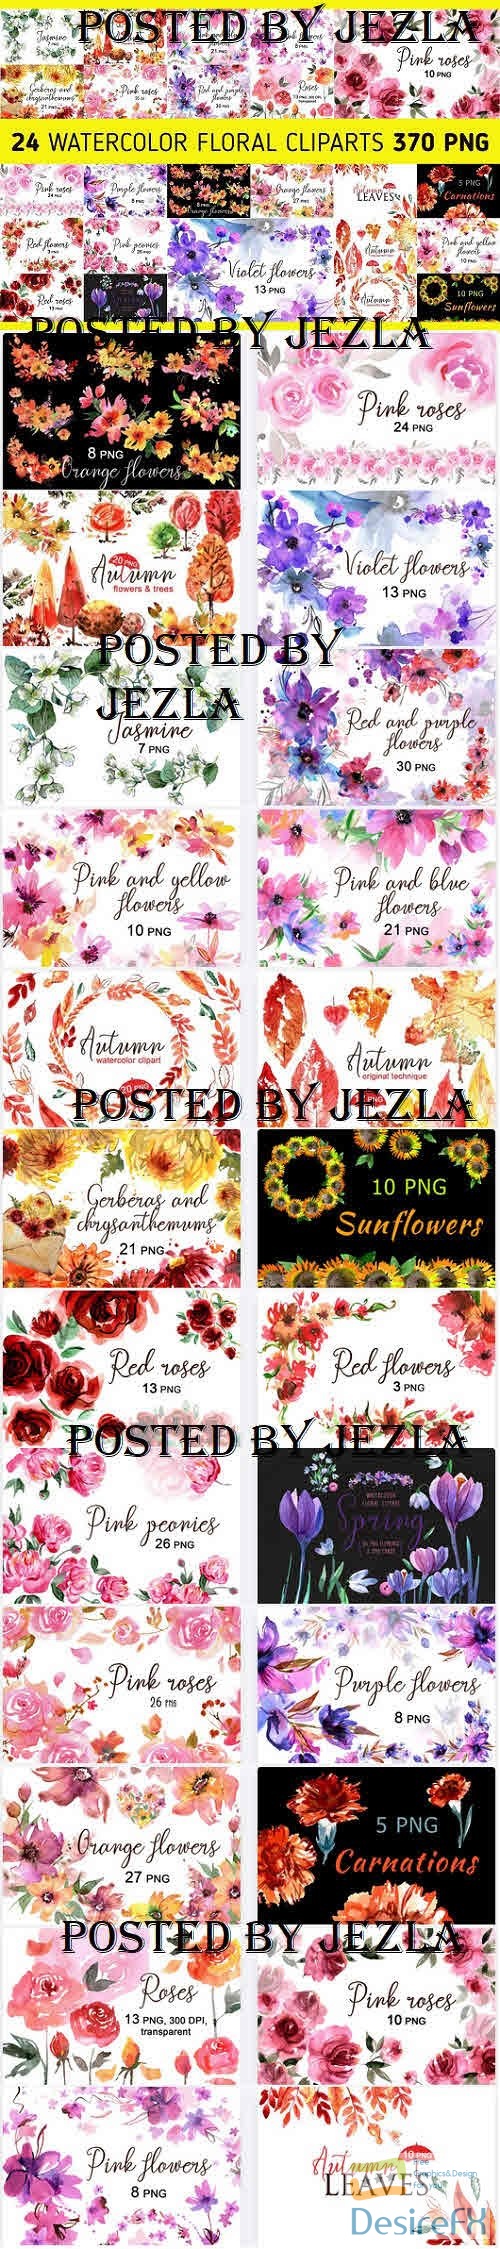 Floral Watercolor Clipart Bundle - 24 Premium Graphics